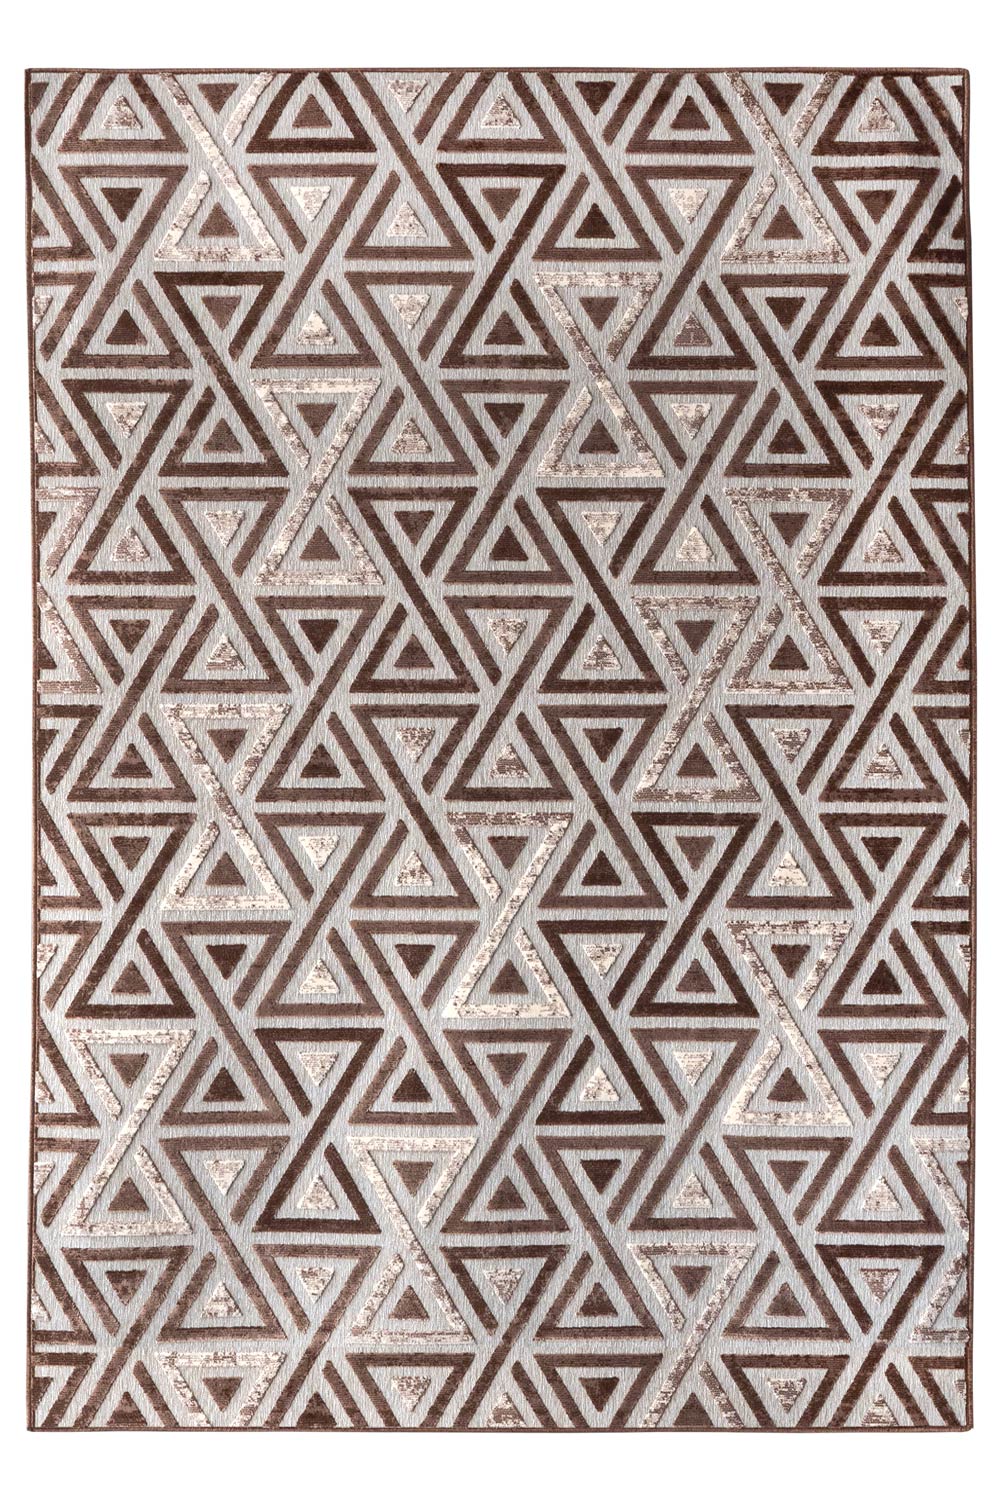 Kusový koberec RAGUSA 2503/85 Taupe/Champagne 68x110 cm